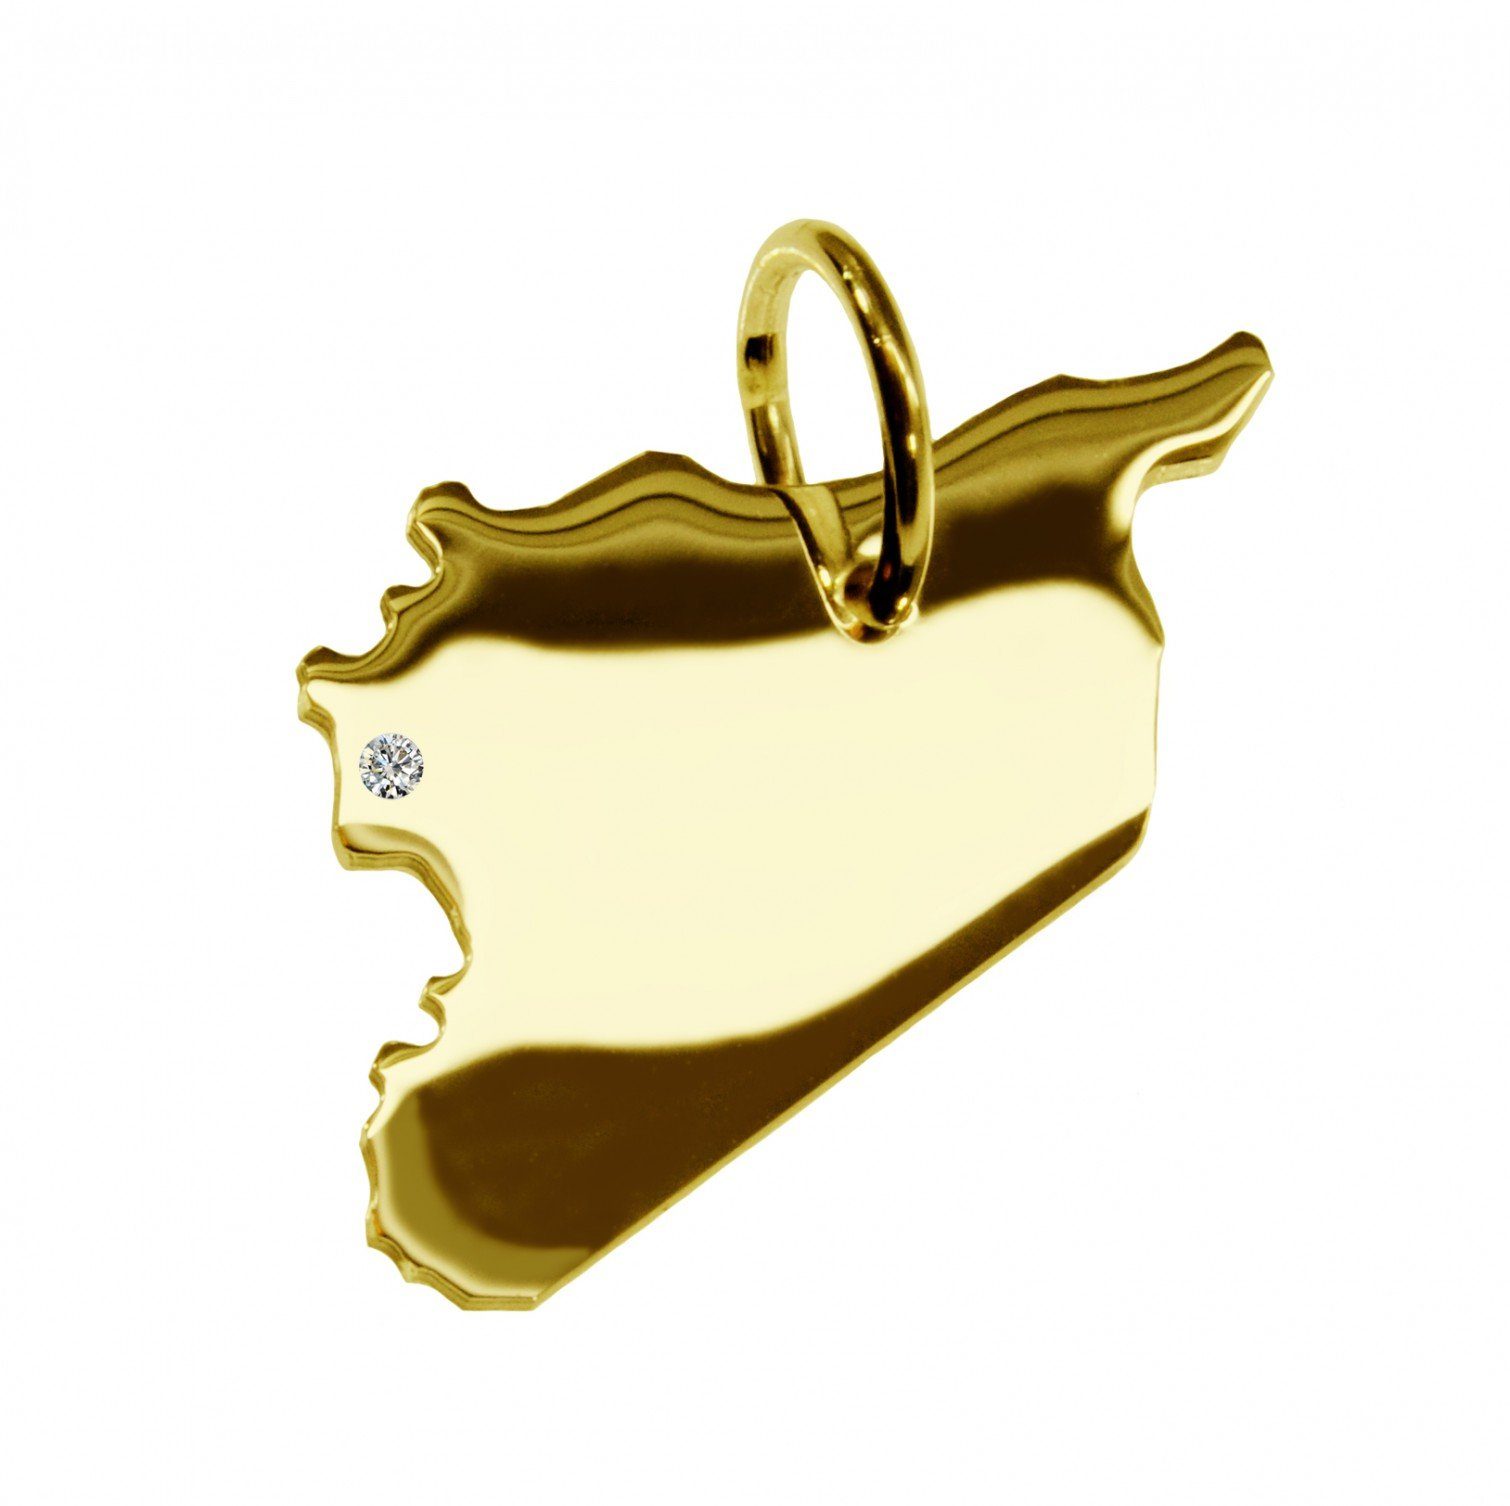 schmuckador Kettenanhänger Kettenanhänger in der Form von der Landkarte Syrien mit Brillant 0,015ct an Ihrem Wunschort in massiv 585 Gelbgold